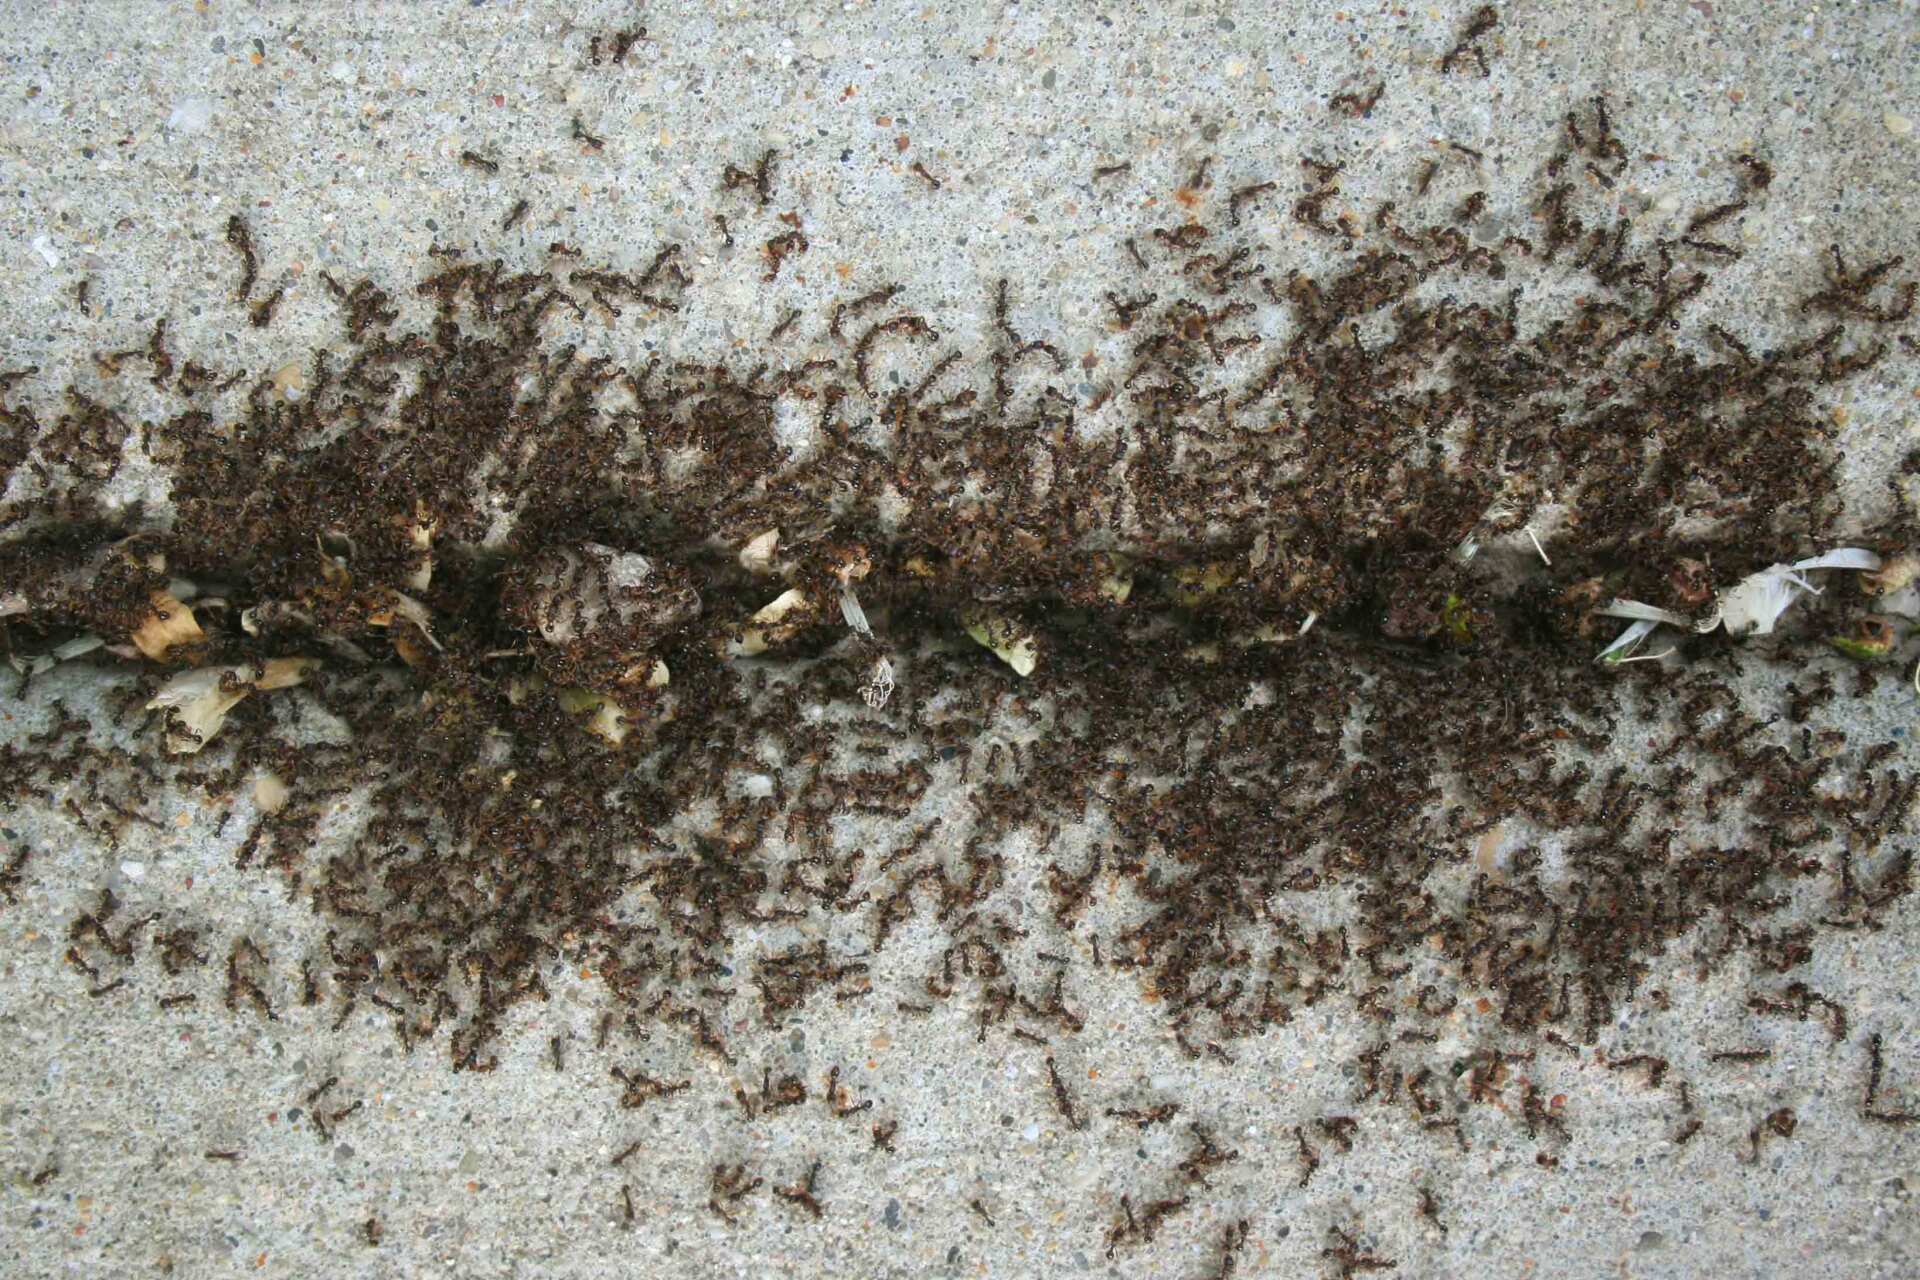 Ants On Sidewalk - Warren, MI - Maple Lane Pest Control